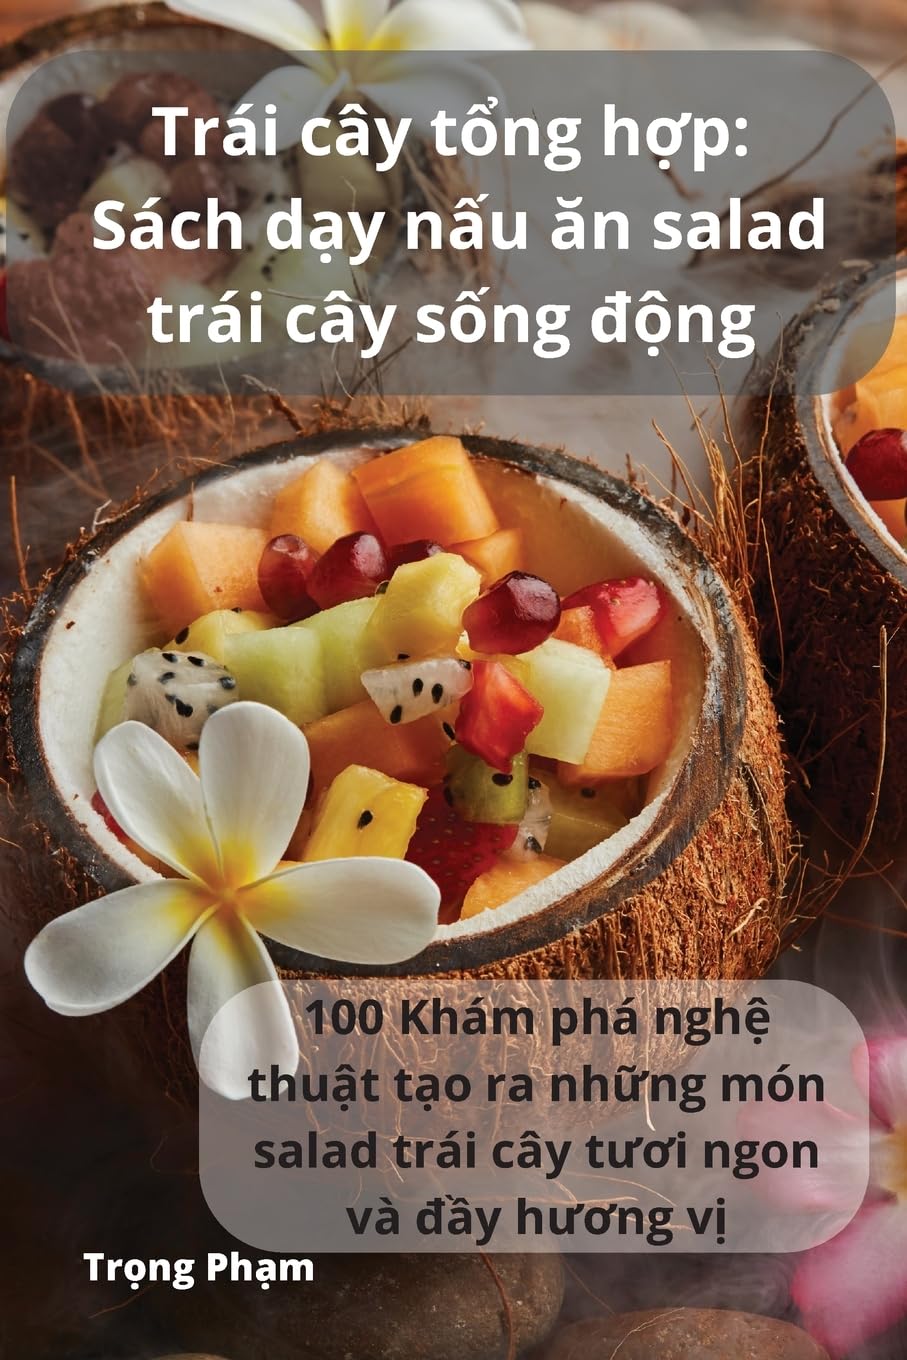 Trái cây tổng hợp: Sách dạy nấu ăn salad trái cây sống động (Vietnamese Edition)